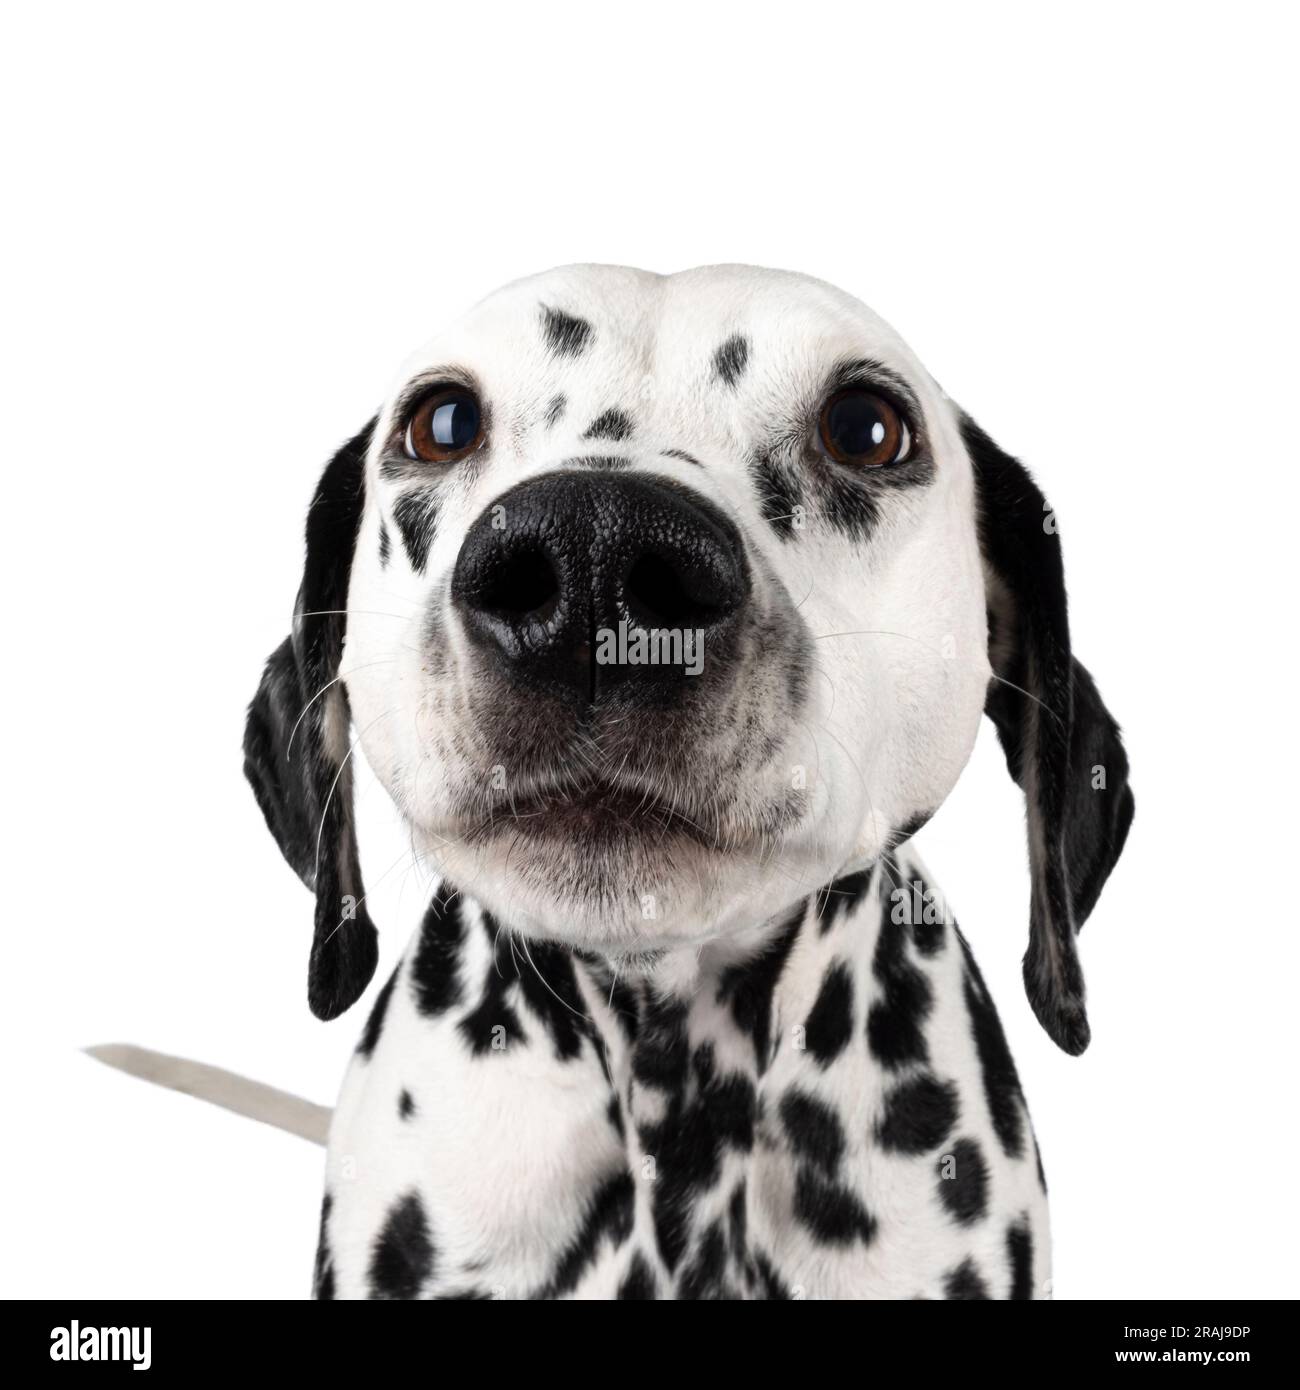 Colpo alla testa di Nosey e Curious Dalmation Dog. Isolato su sfondo bianco. Foto Stock